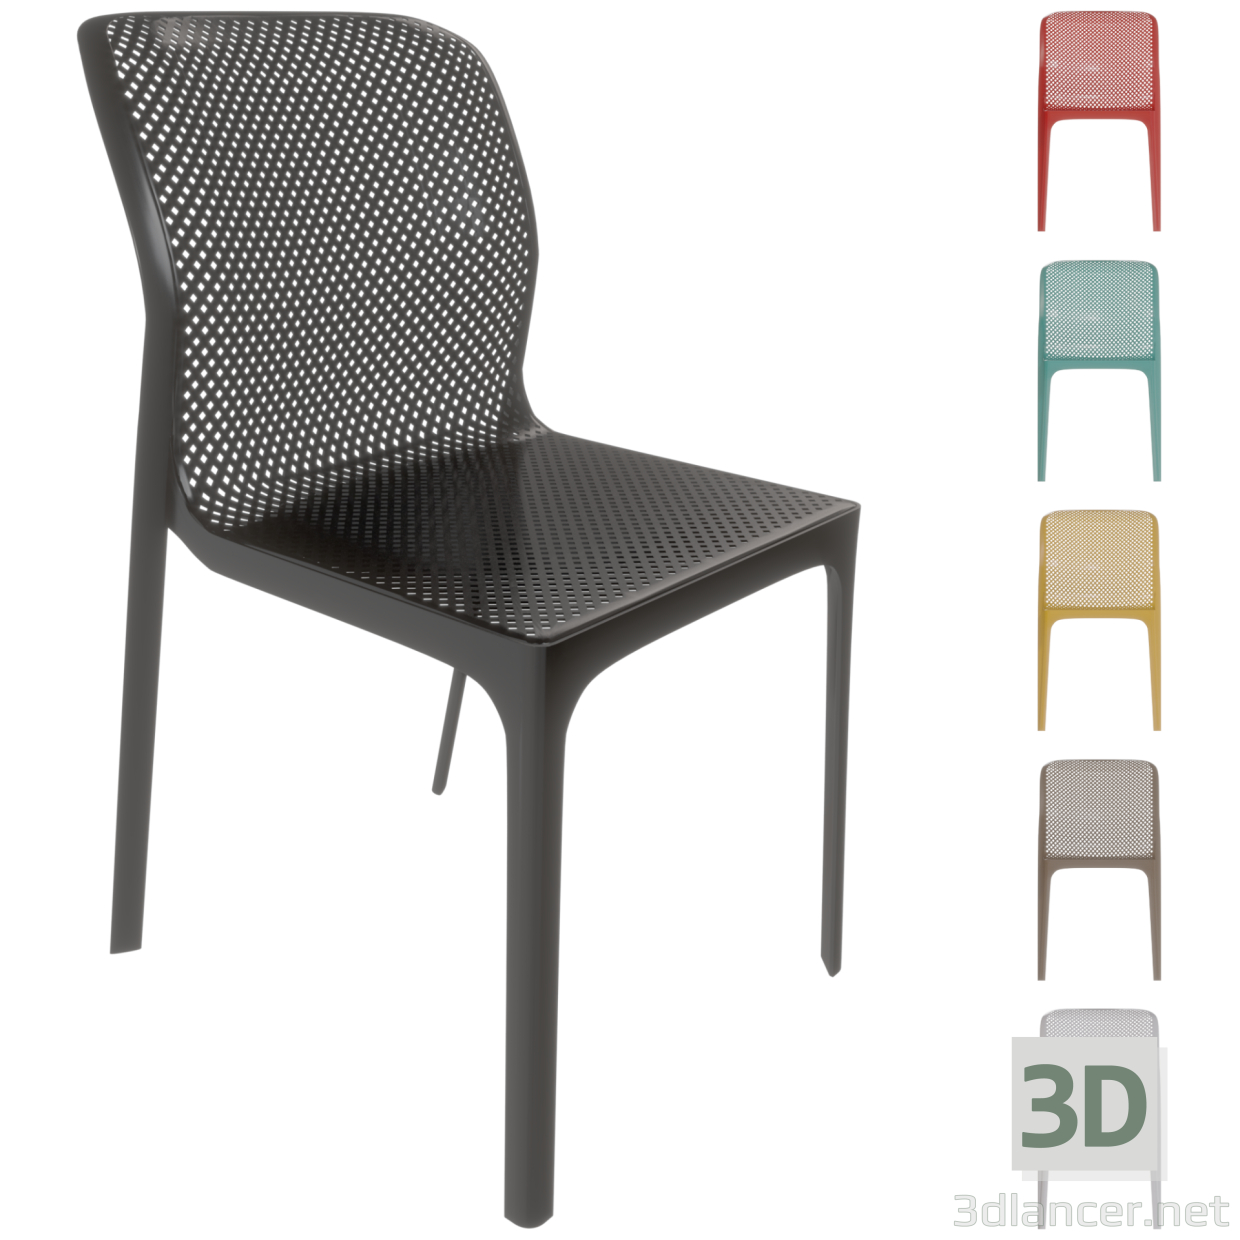 3d Пластиковый стул BIT без подлокотников Торговой марки NARDI в 6 разных цветовых решениях. модель купить - ракурс